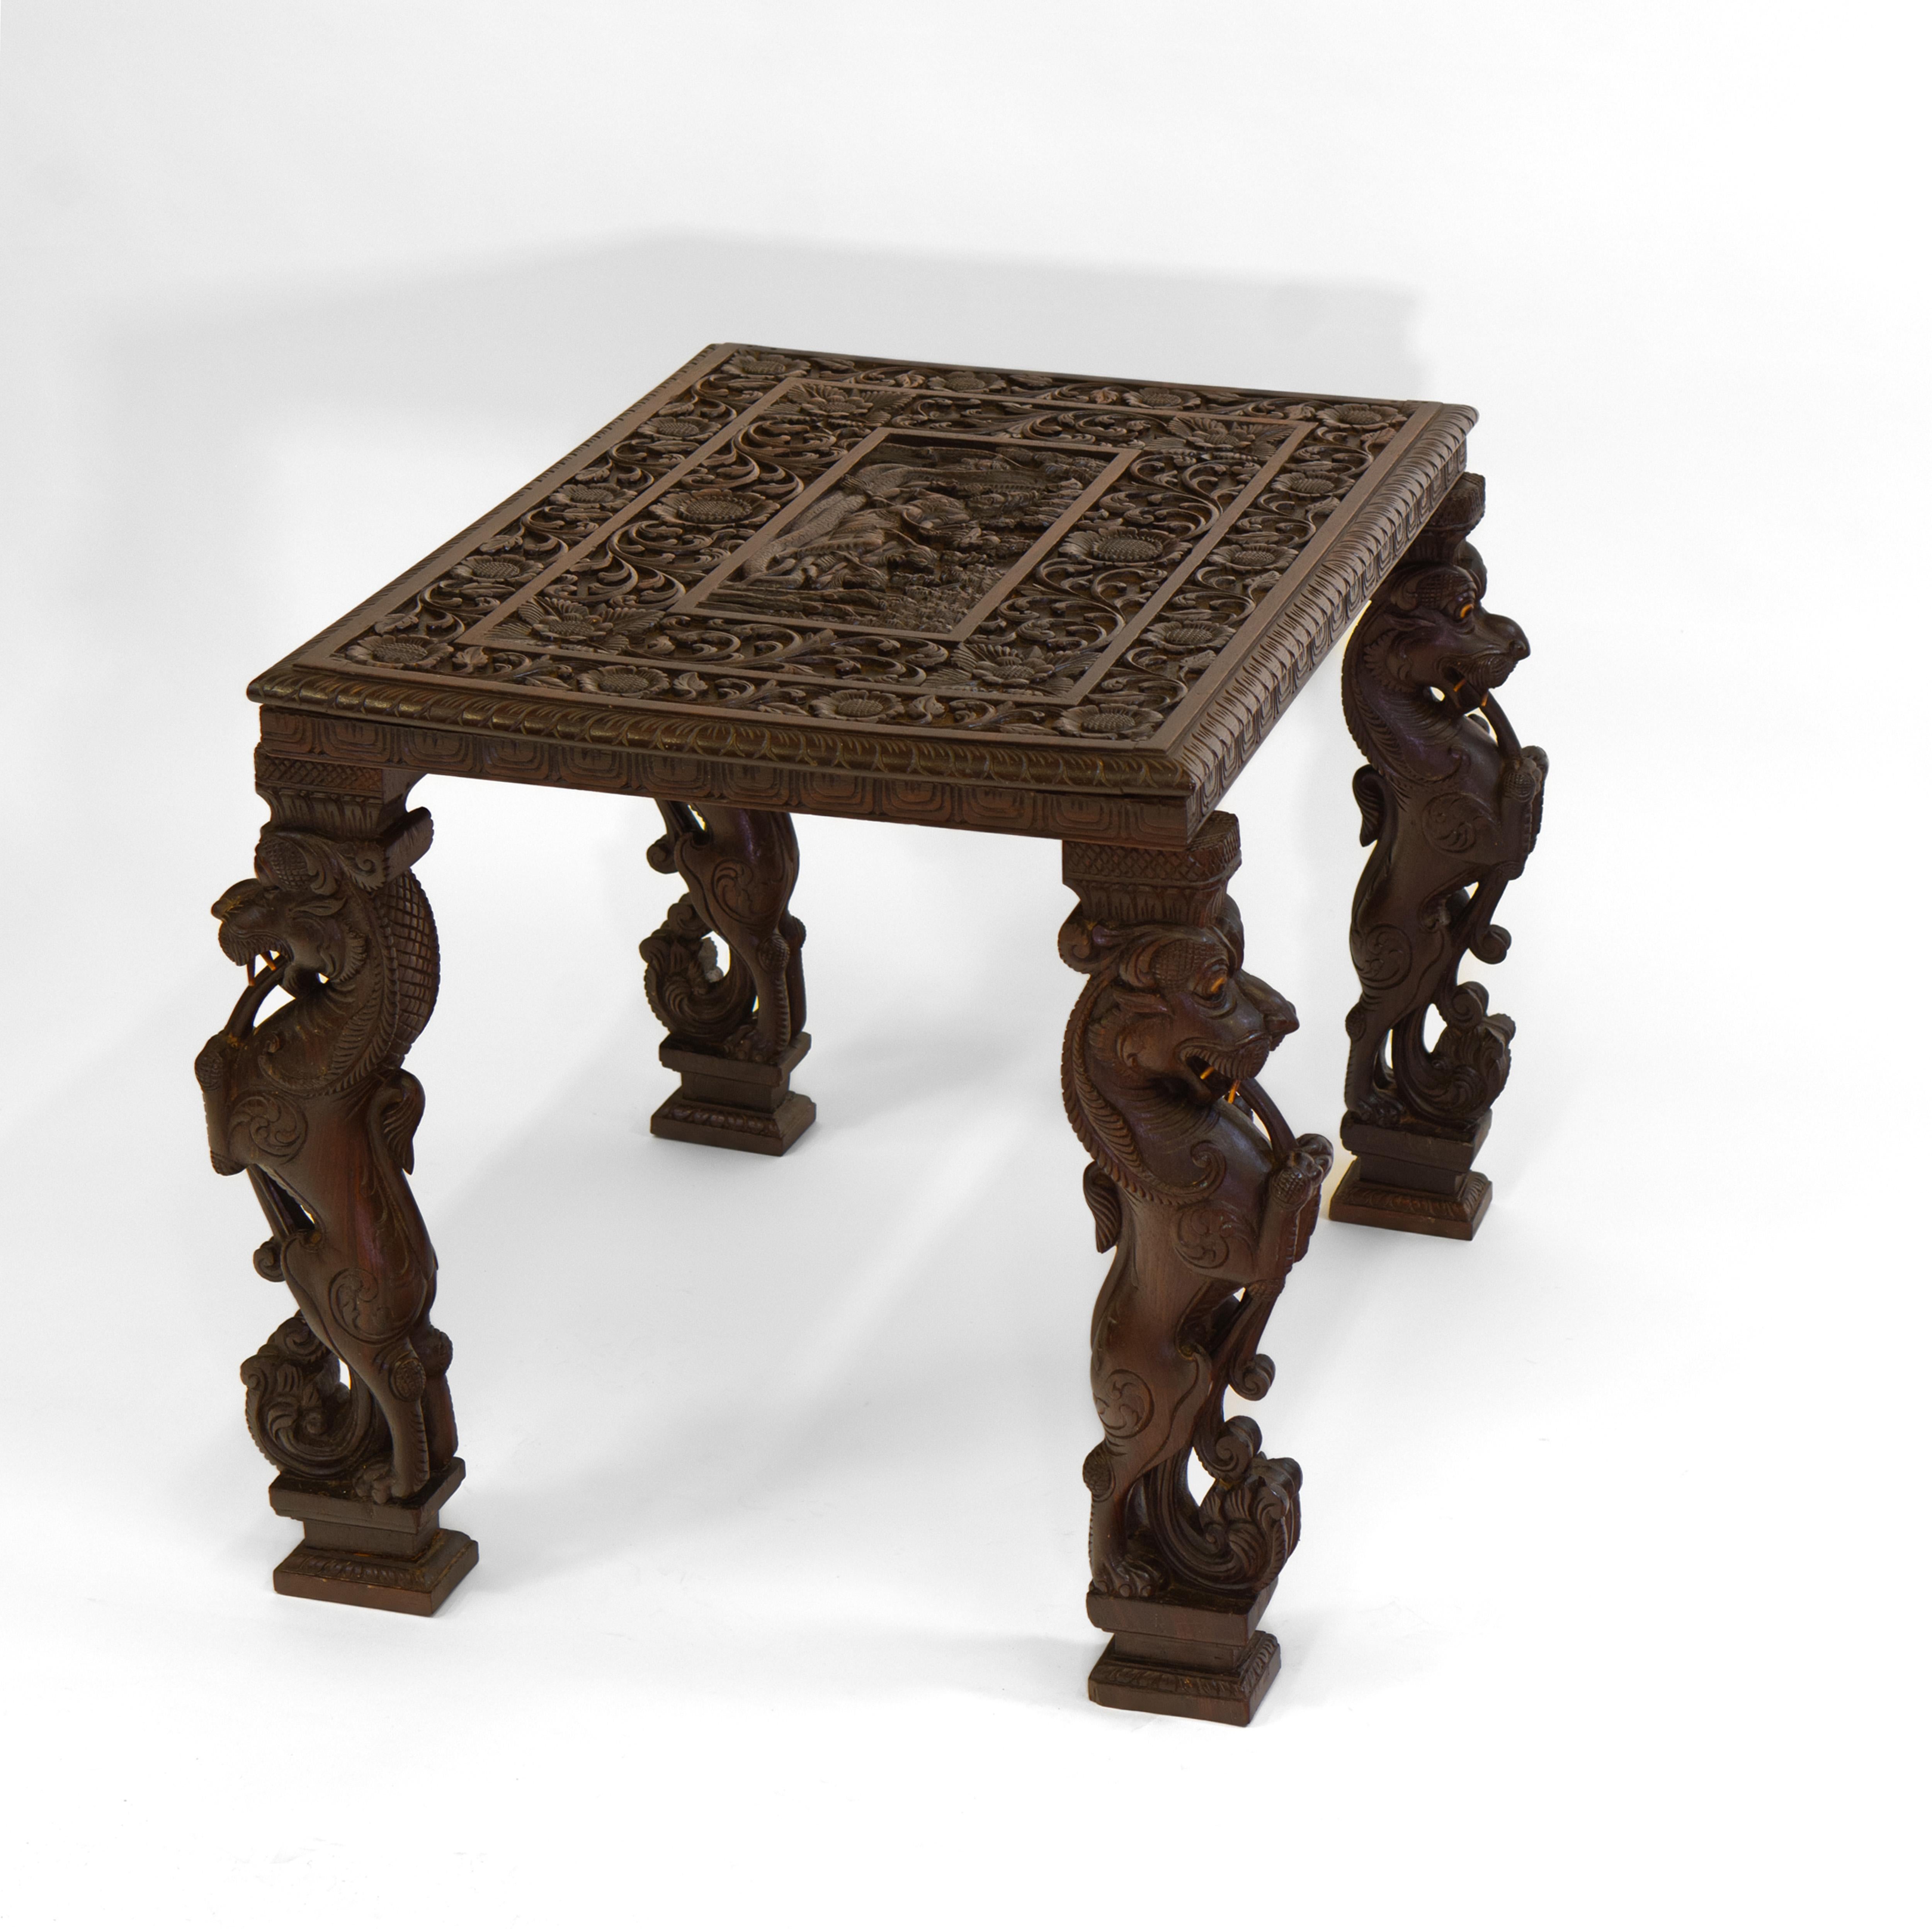 Magnifique table d'appoint anglo-indienne abondamment sculptée à la main avec des lions mythiques sur chaque pied. Elle est ornée d'une décoration florale complexe et d'un sommet sculpté représentant Vishnu. Circa 1900.

Livraison incluse au